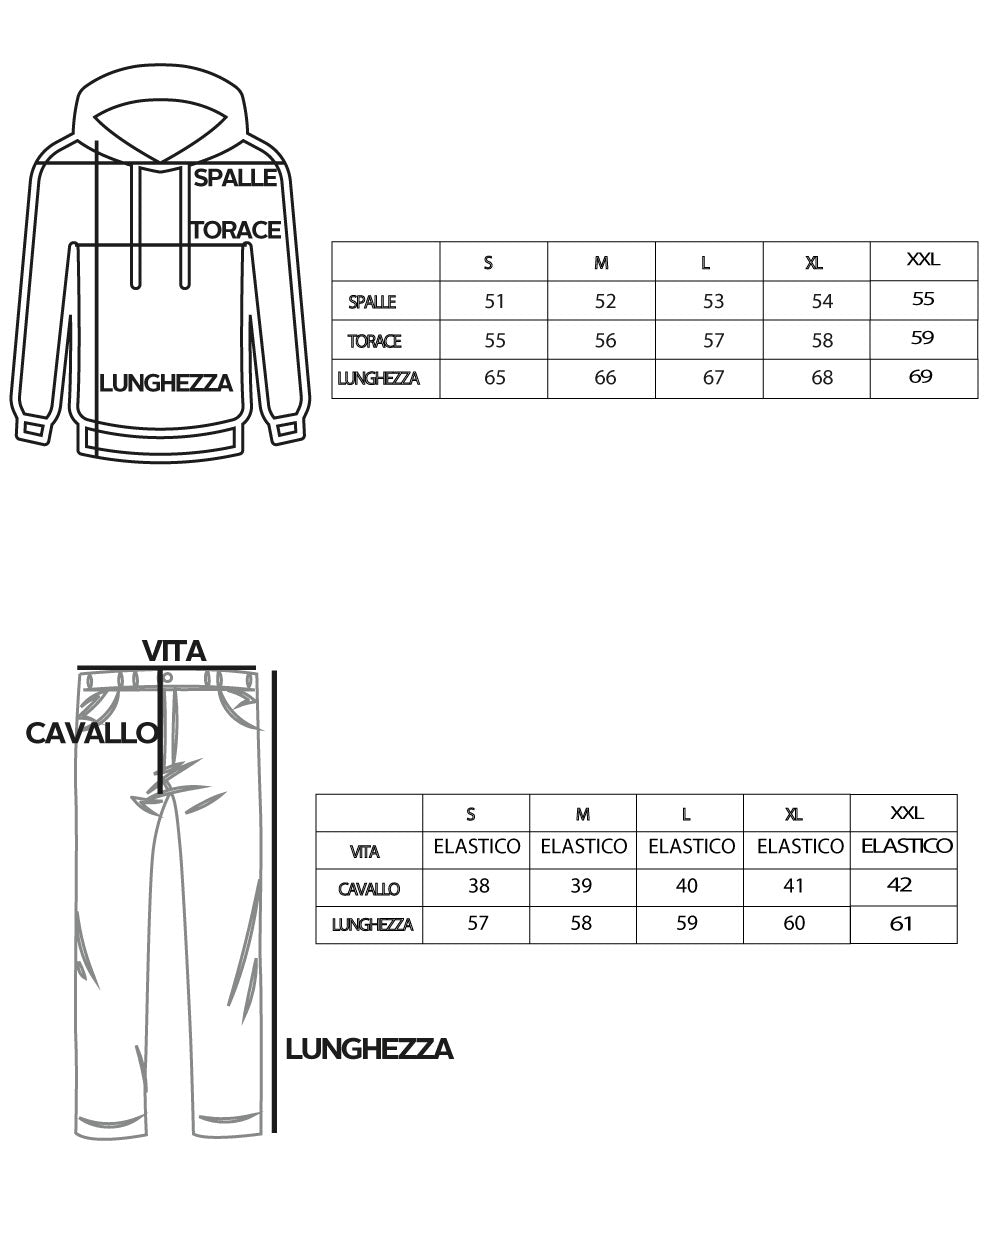 Completo Set Coordinato Uomo Viscosa Camicia Con Colletto Bermuda Outfit Camel GIOSAL-OU2375A